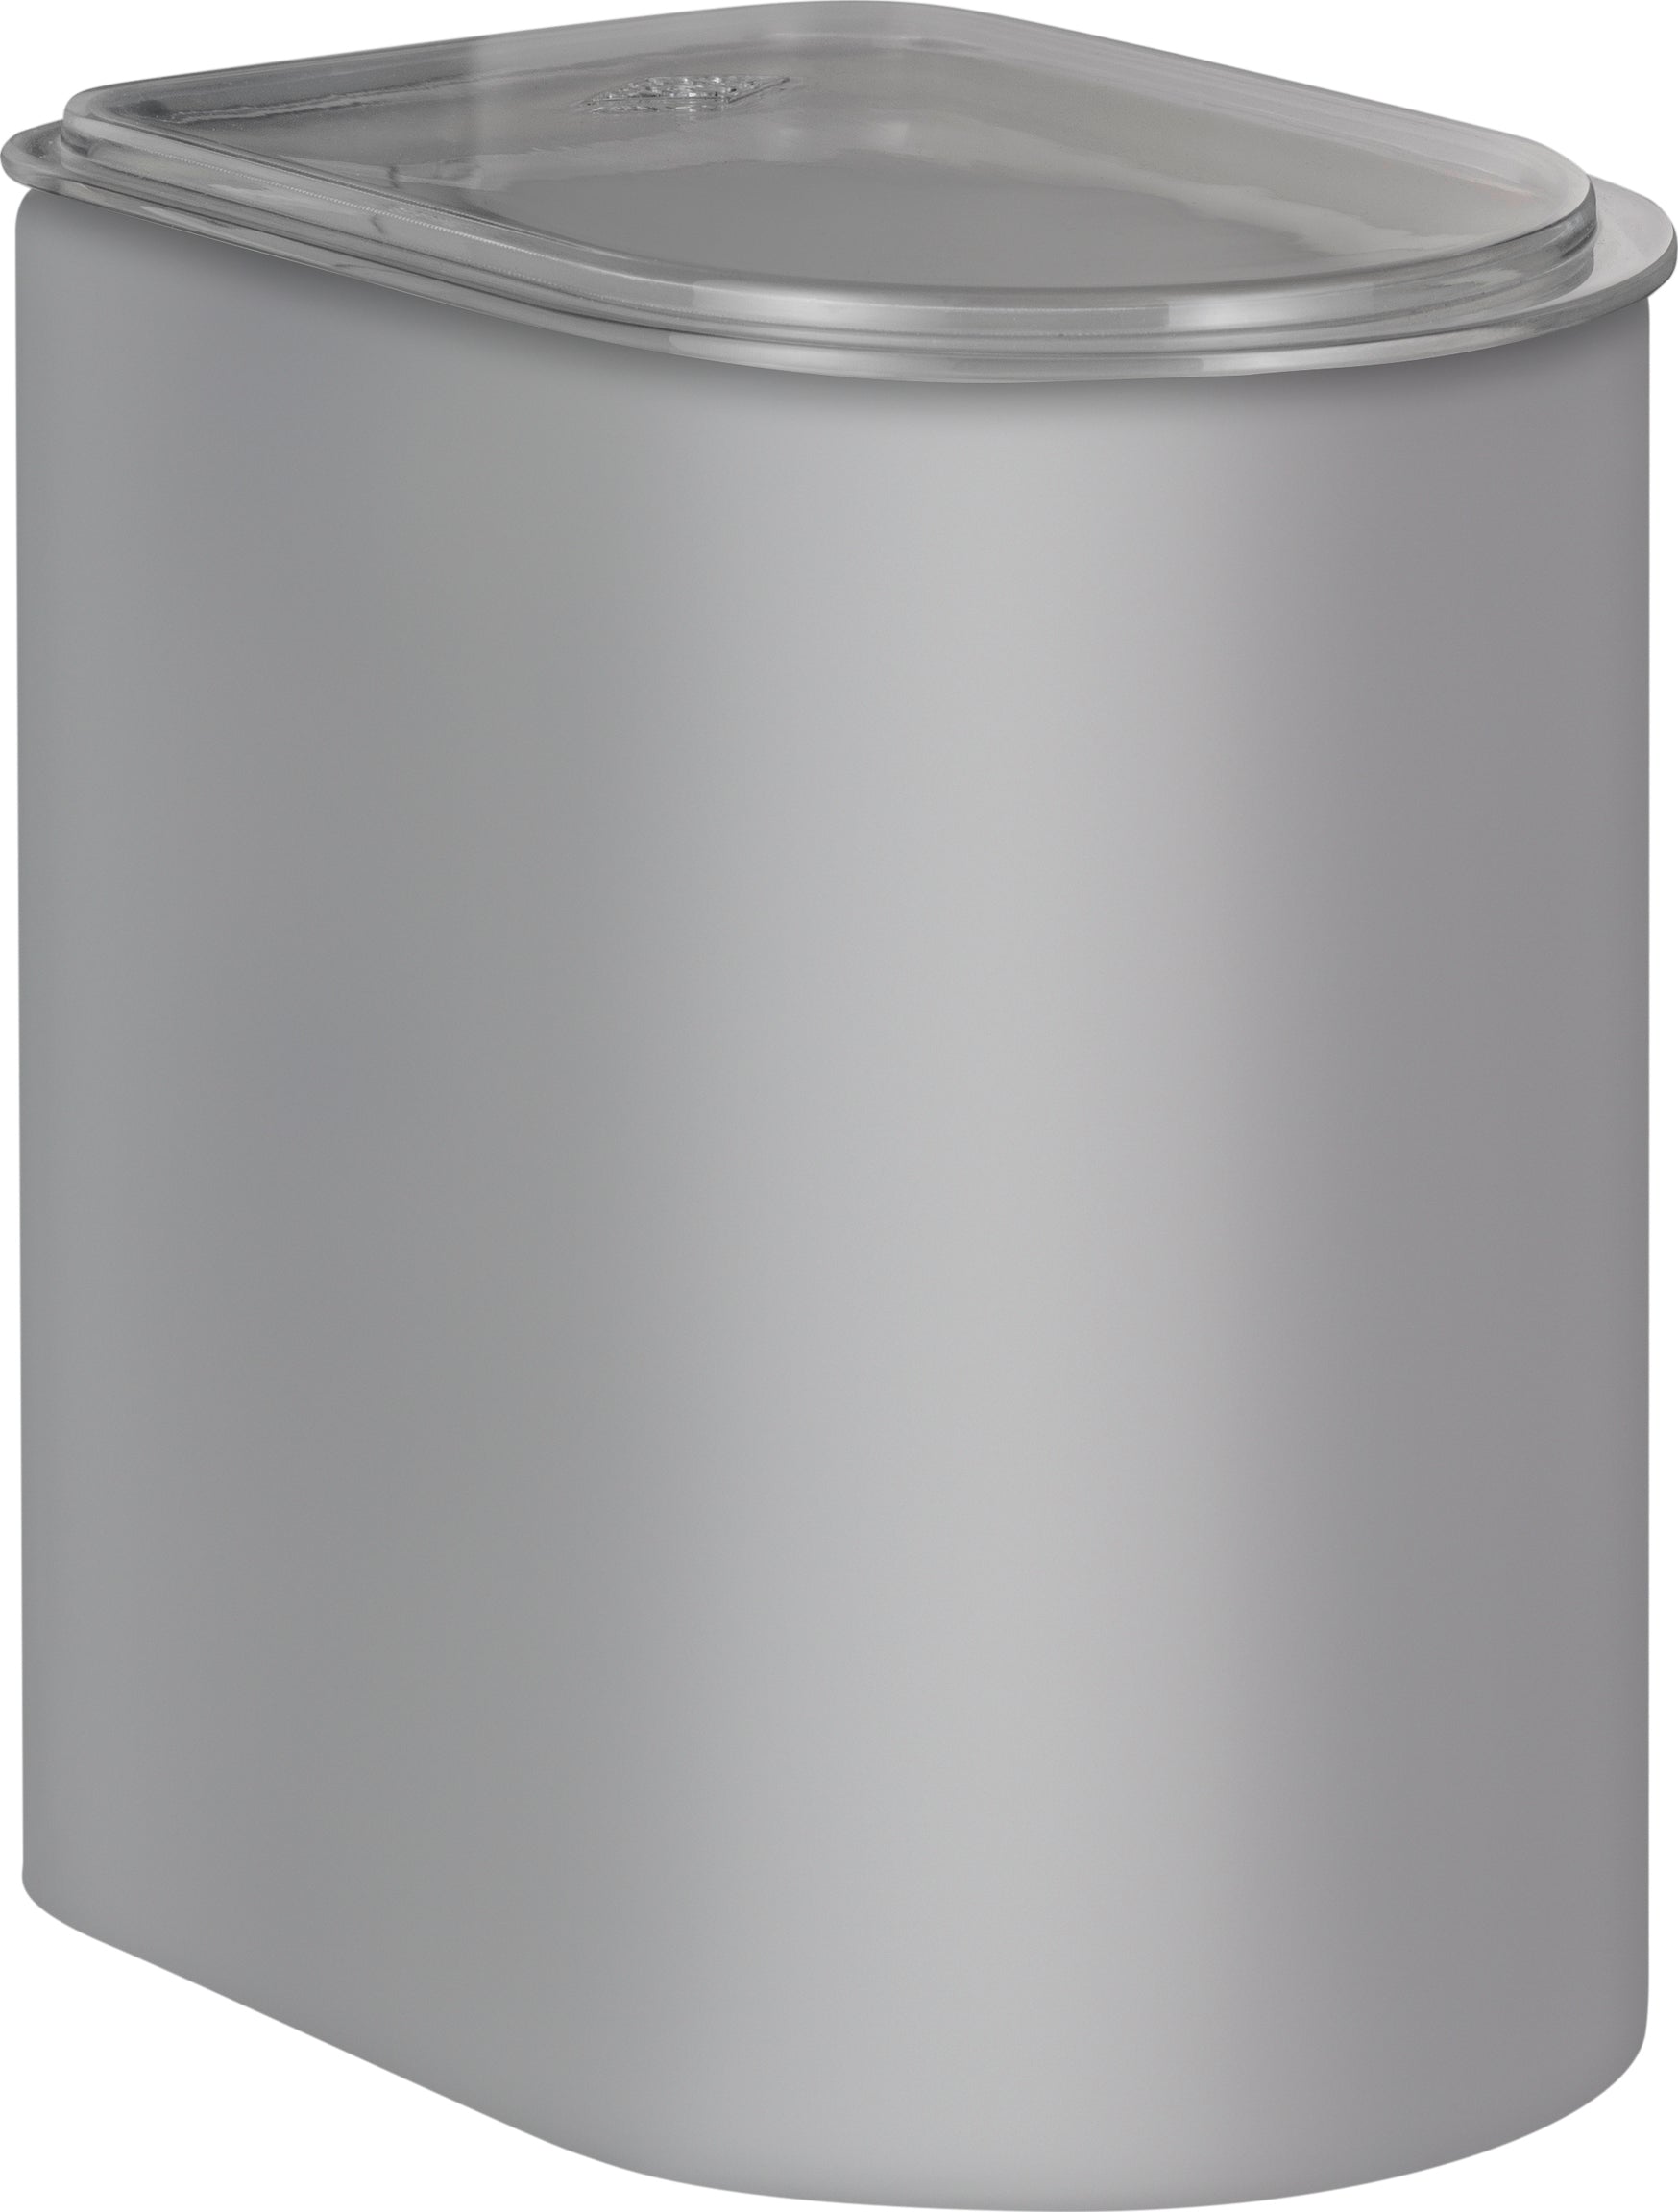 Wesco Kapsel 2,2 liter med akryl lock, sval grå matt